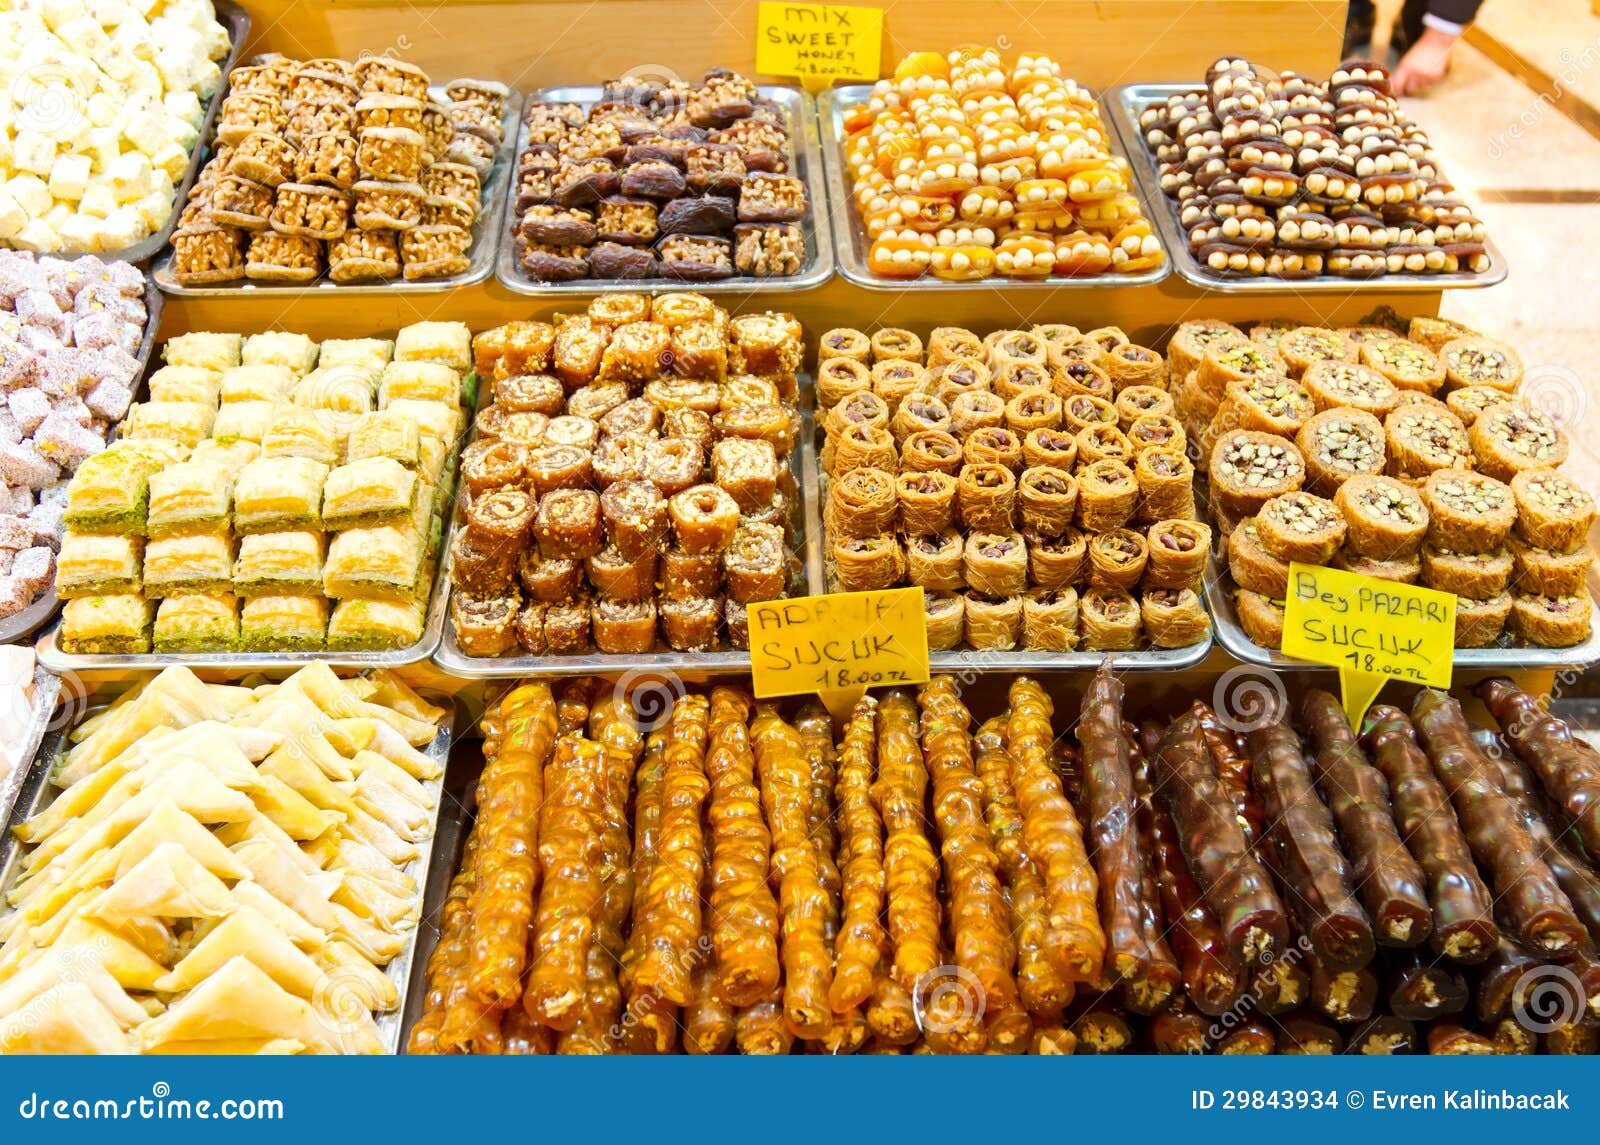 turkish-sweets-spice-bazaar-istanbul-29843934.jpg